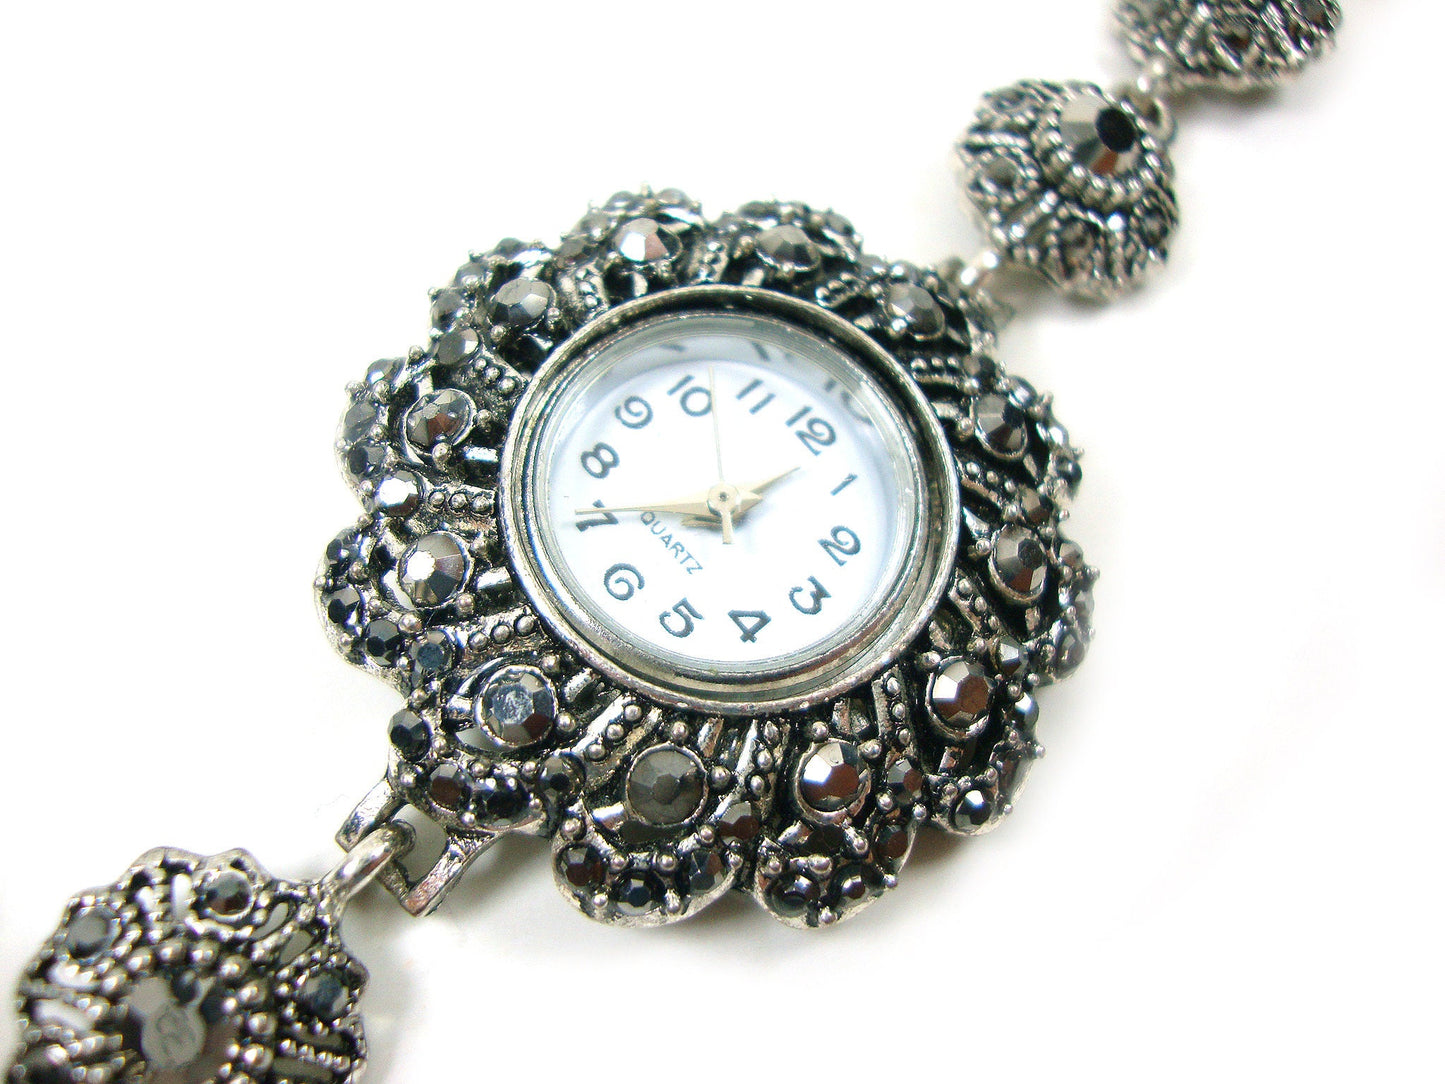 Griechische byzantinische moderne Uhr, graue silberne Kristalle Quarz runde ethnische Uhr, türkische Armbanduhr, griechischer Schmuck, griechischer türkischer Schmuck